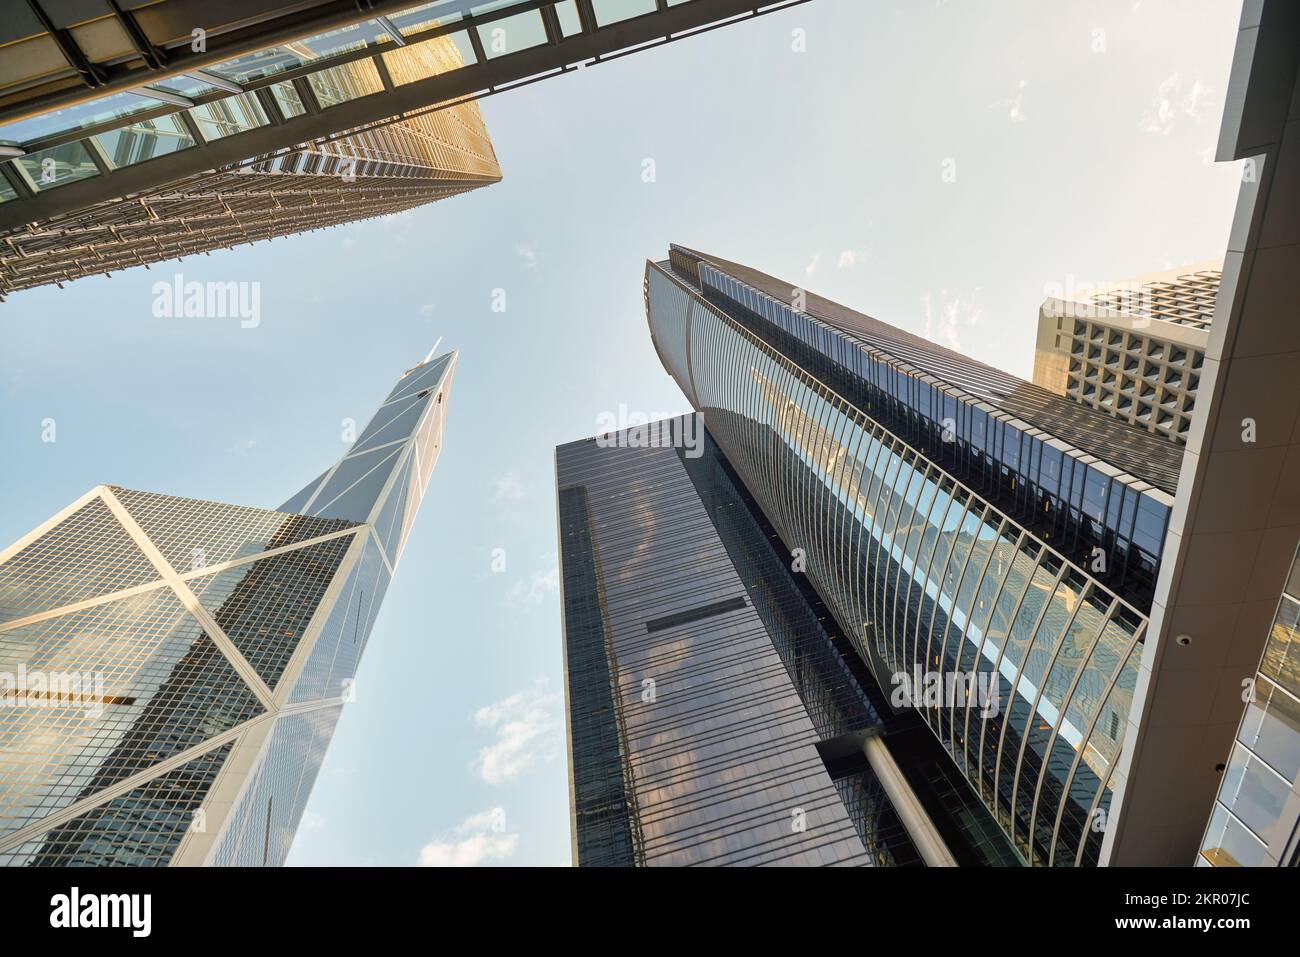 HONG KONG - CIRCA DECEMBER, 2019: Bank of China Tower, ICBC Tower and Citibank Tower as seen in Hong Kong. Stock Photo